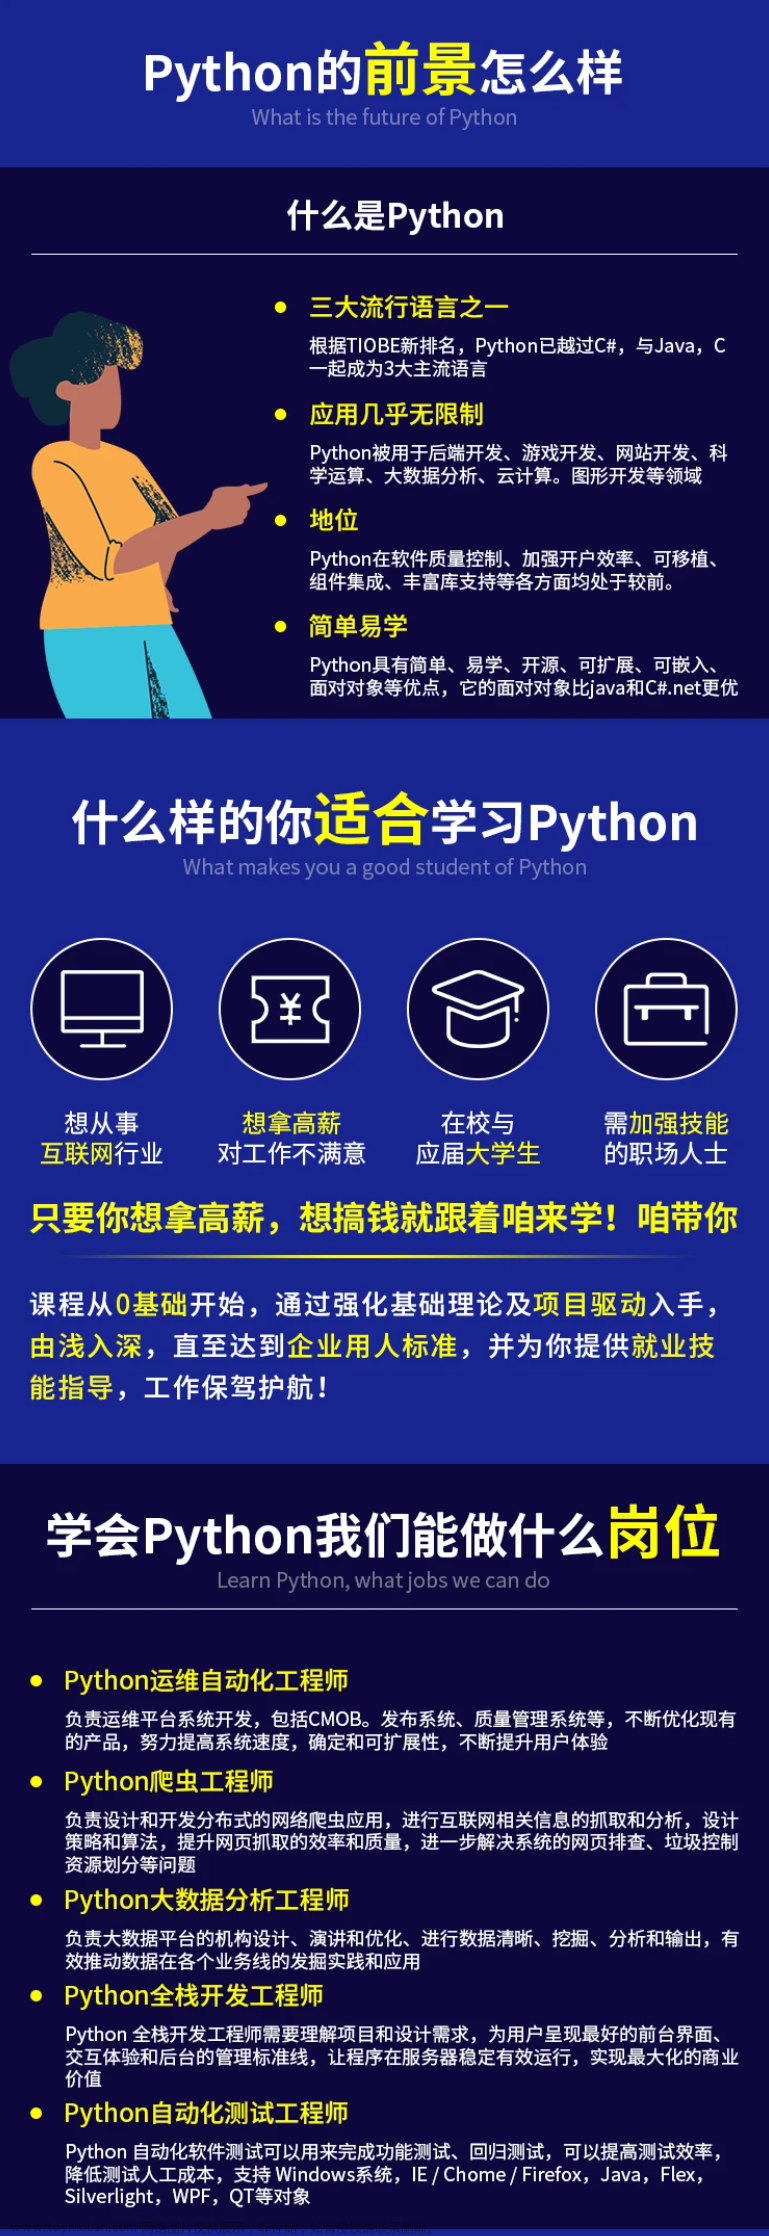 webUI自动化之基本框架搭建（python + selenium + unittest）_python ui自动框架